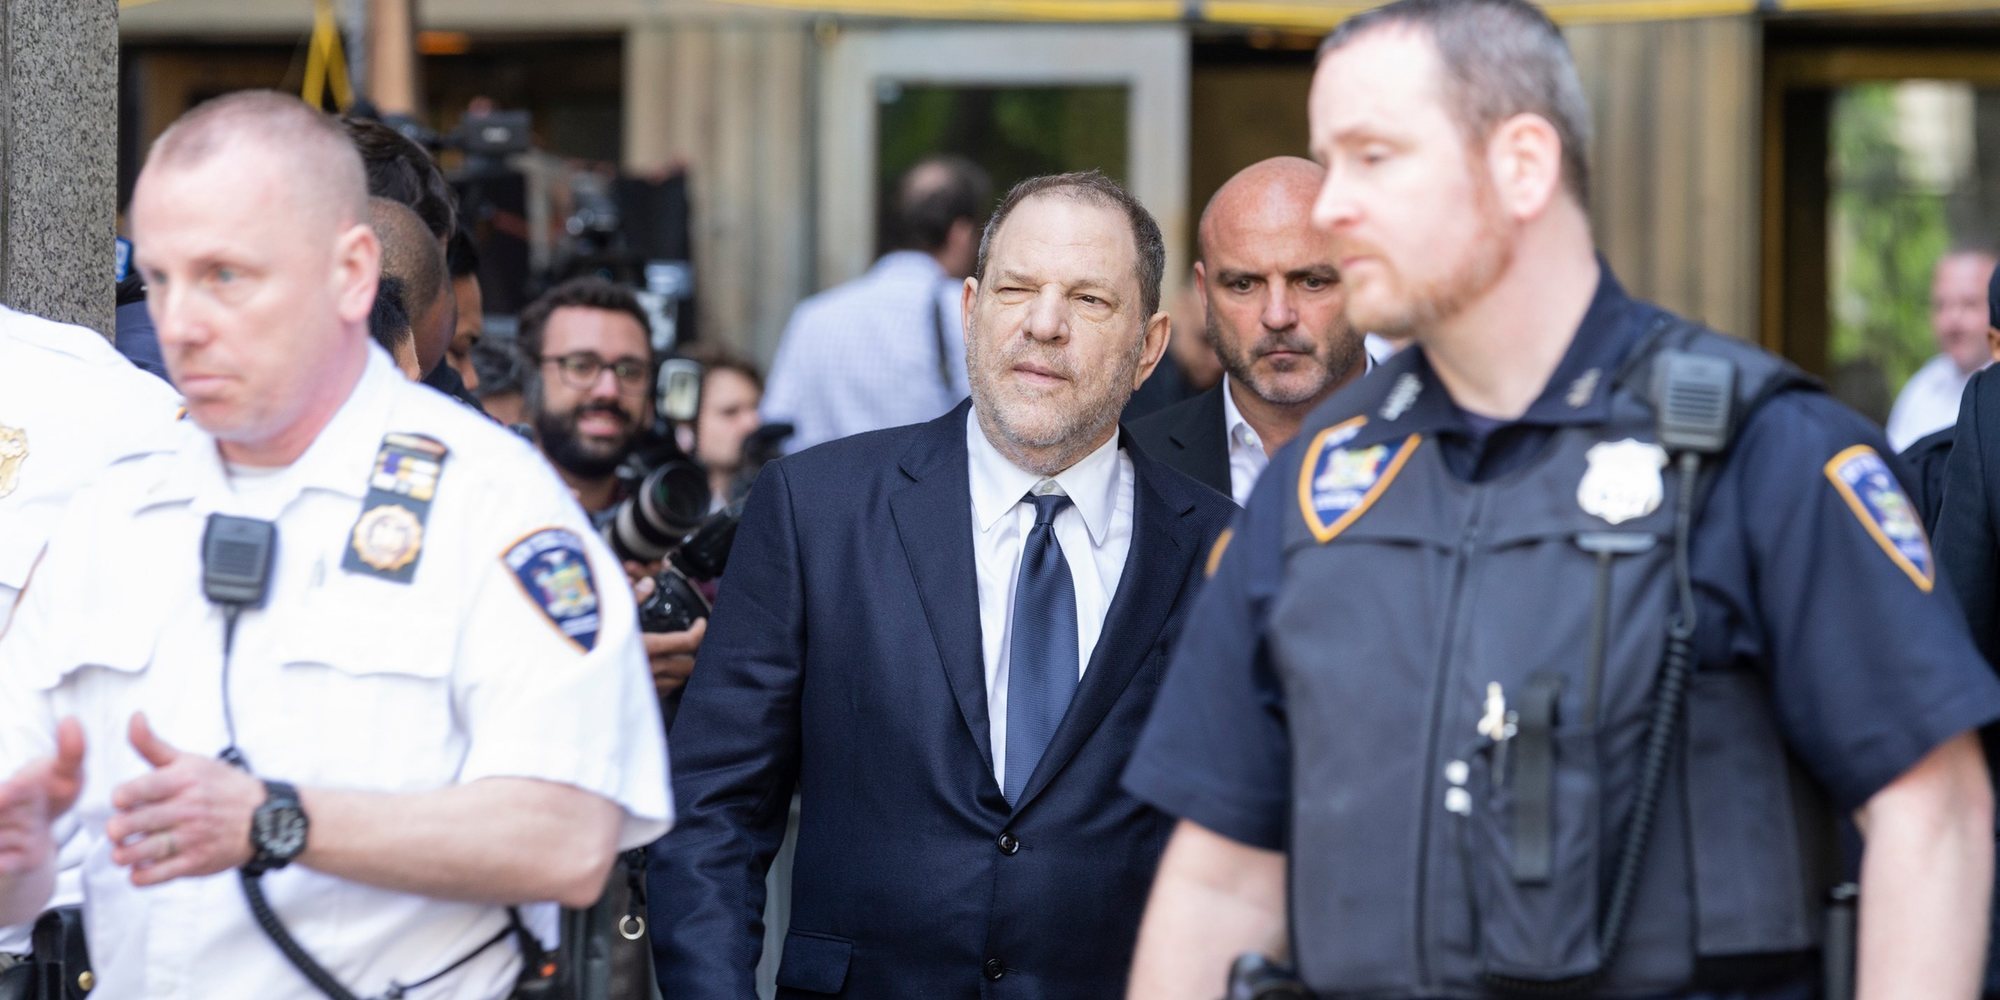 Aplazado el juicio de Weinstein porque una de las denunciantes sufrió un ataque de pánico al ser interrogada